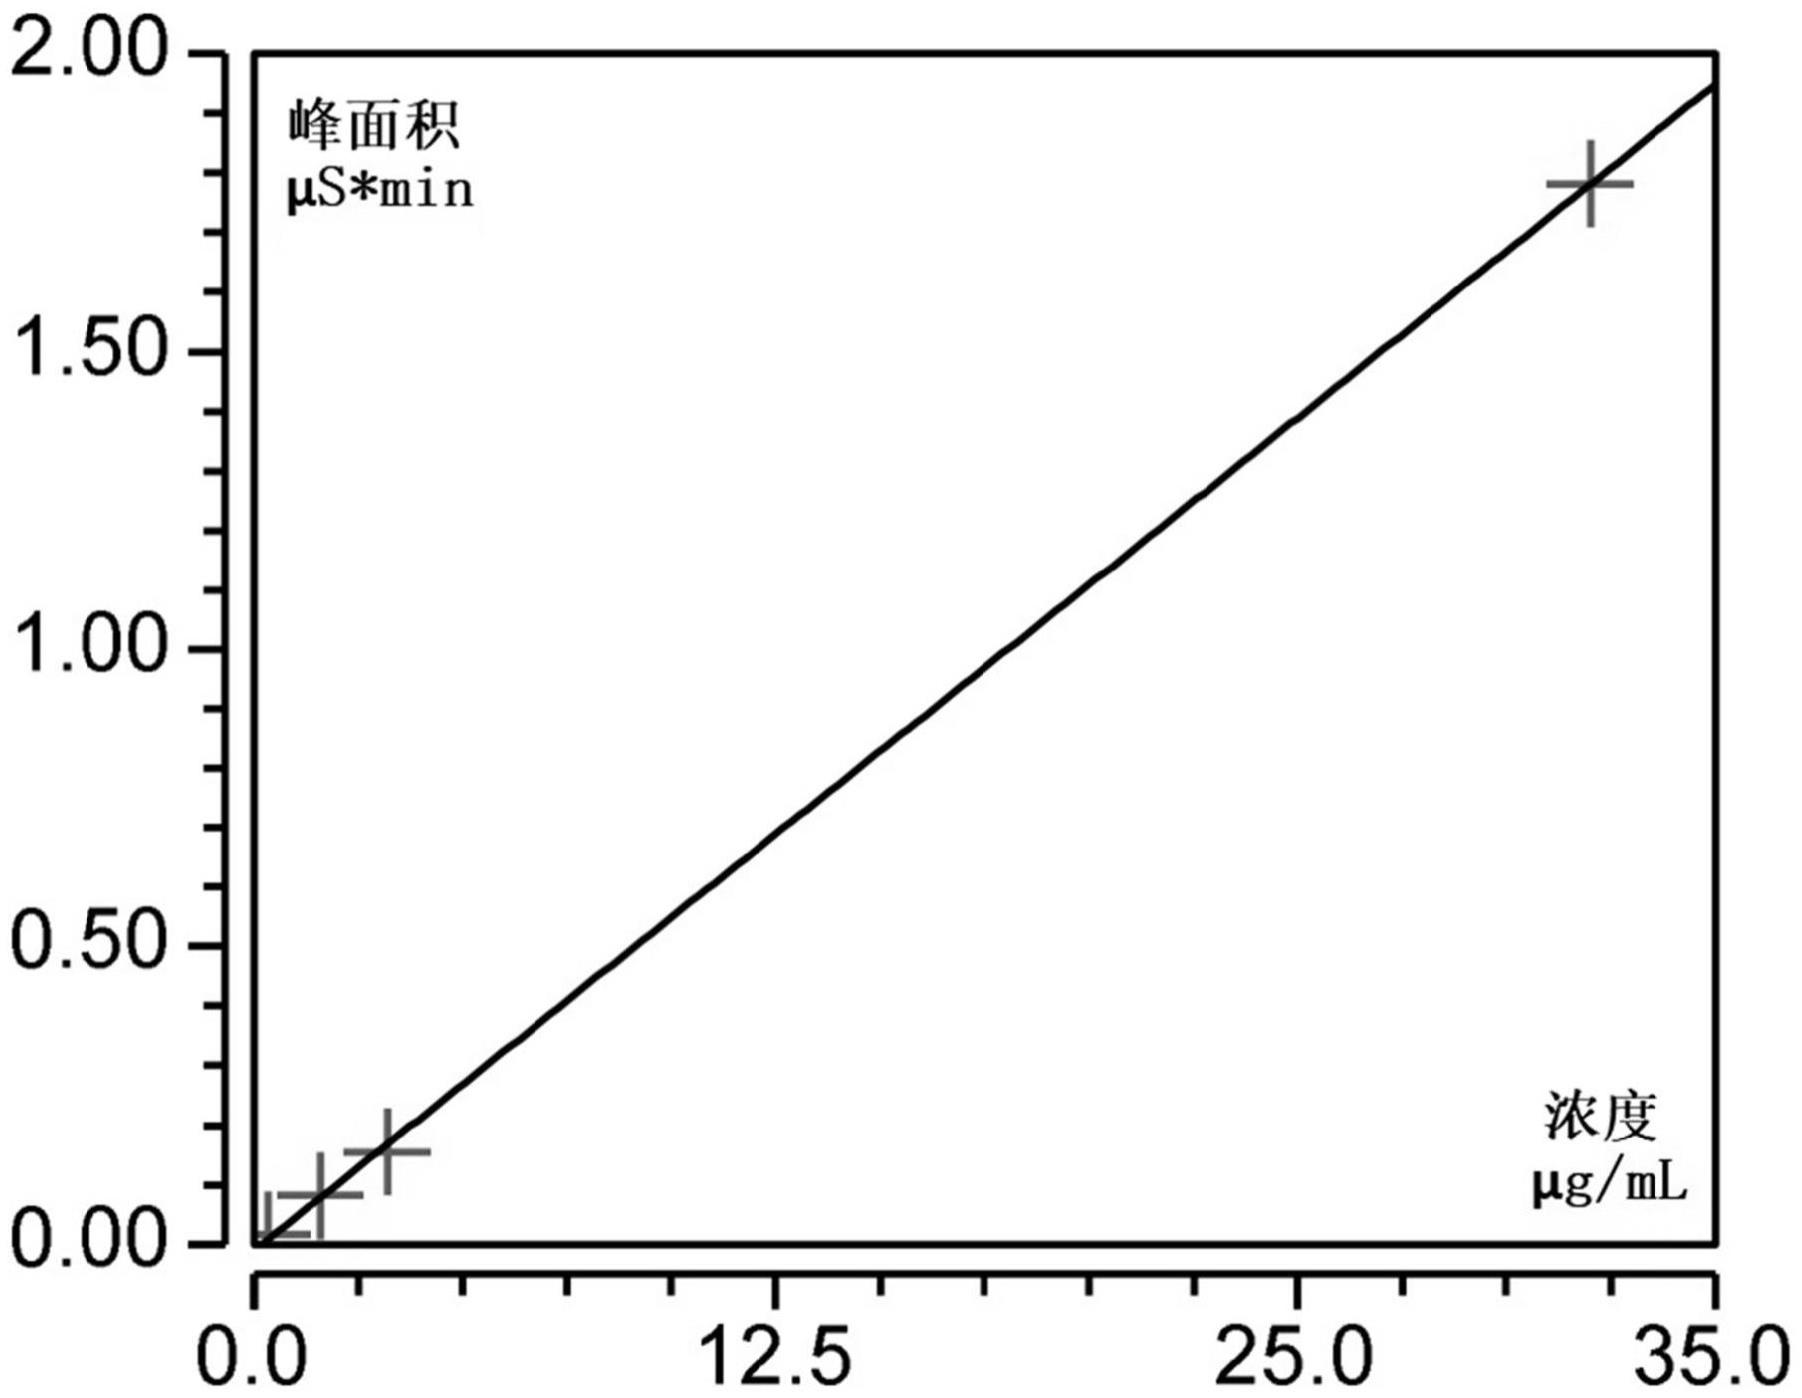 一种阳离子改性剂中2,3-二羟基丙基-三甲基氯化铵的检测方法与流程